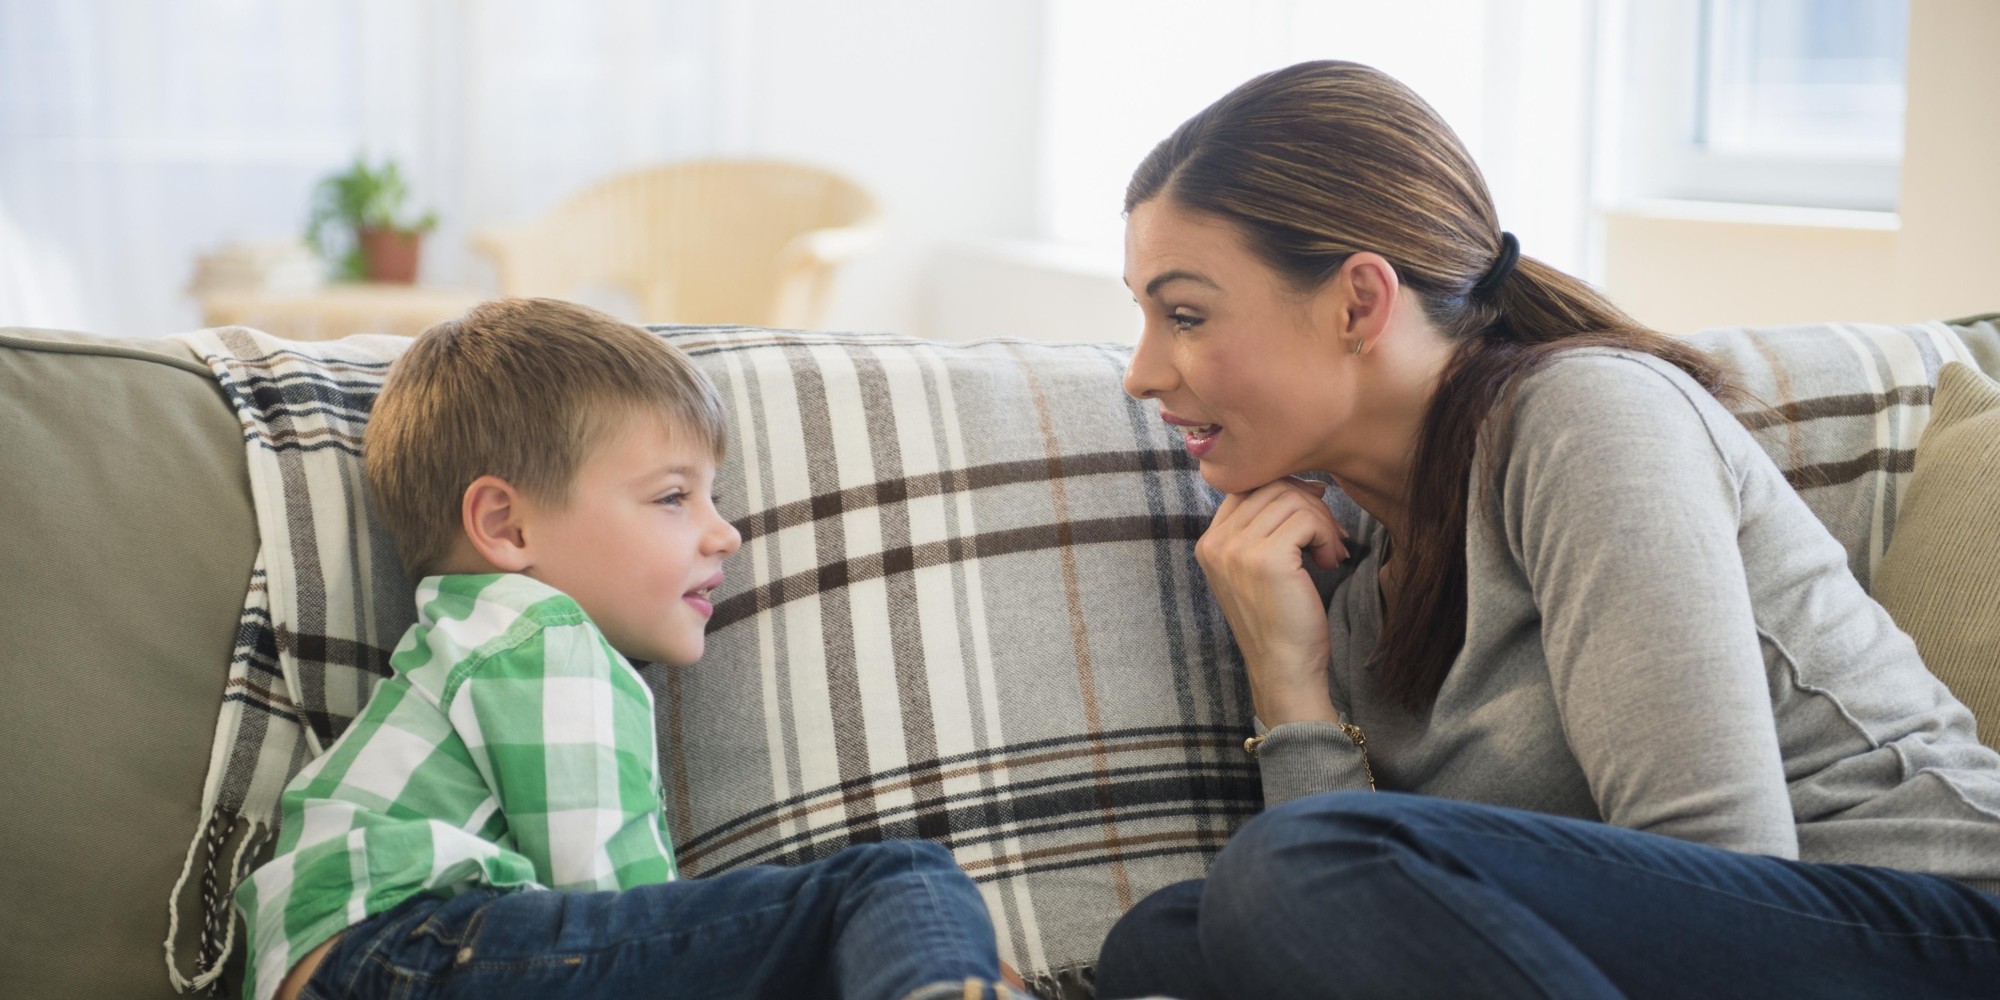 რჩევები, რომლებიც მშობლებმა შვილებს არ უნდა მისცეთ - 5 ყველაზე ცუდი რჩევა